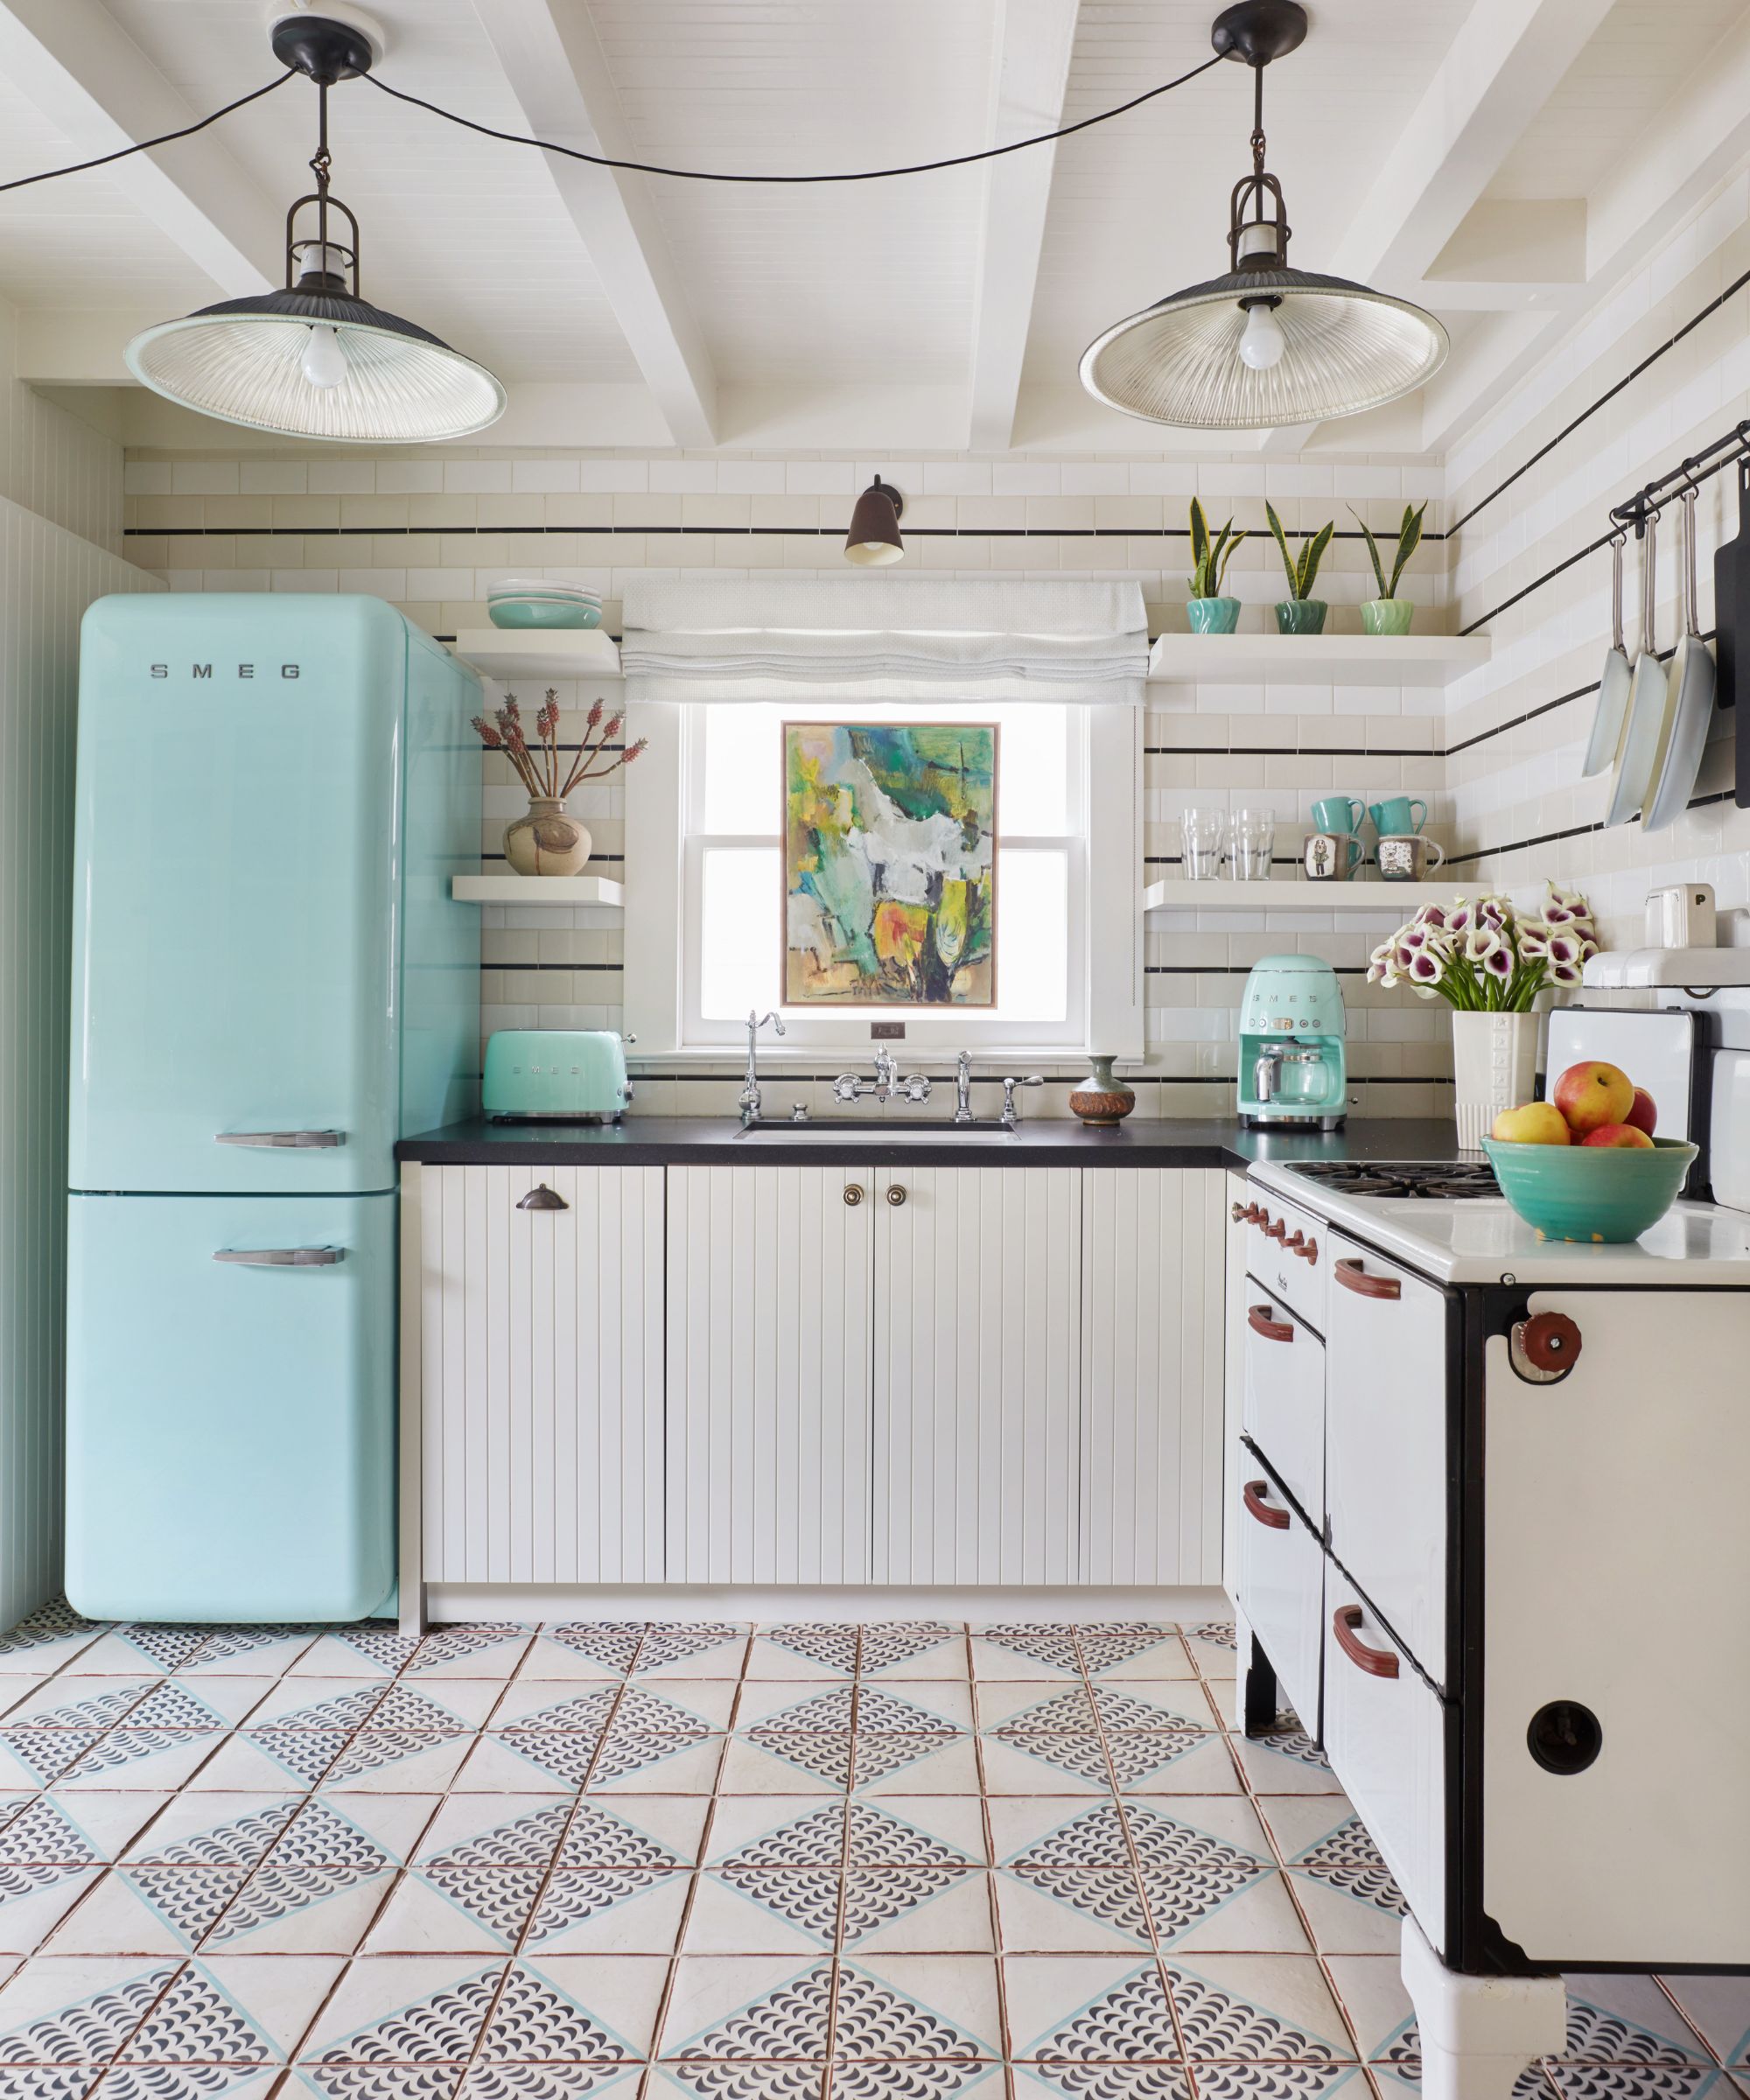 White kitchen with mint green retro Smeg appliances